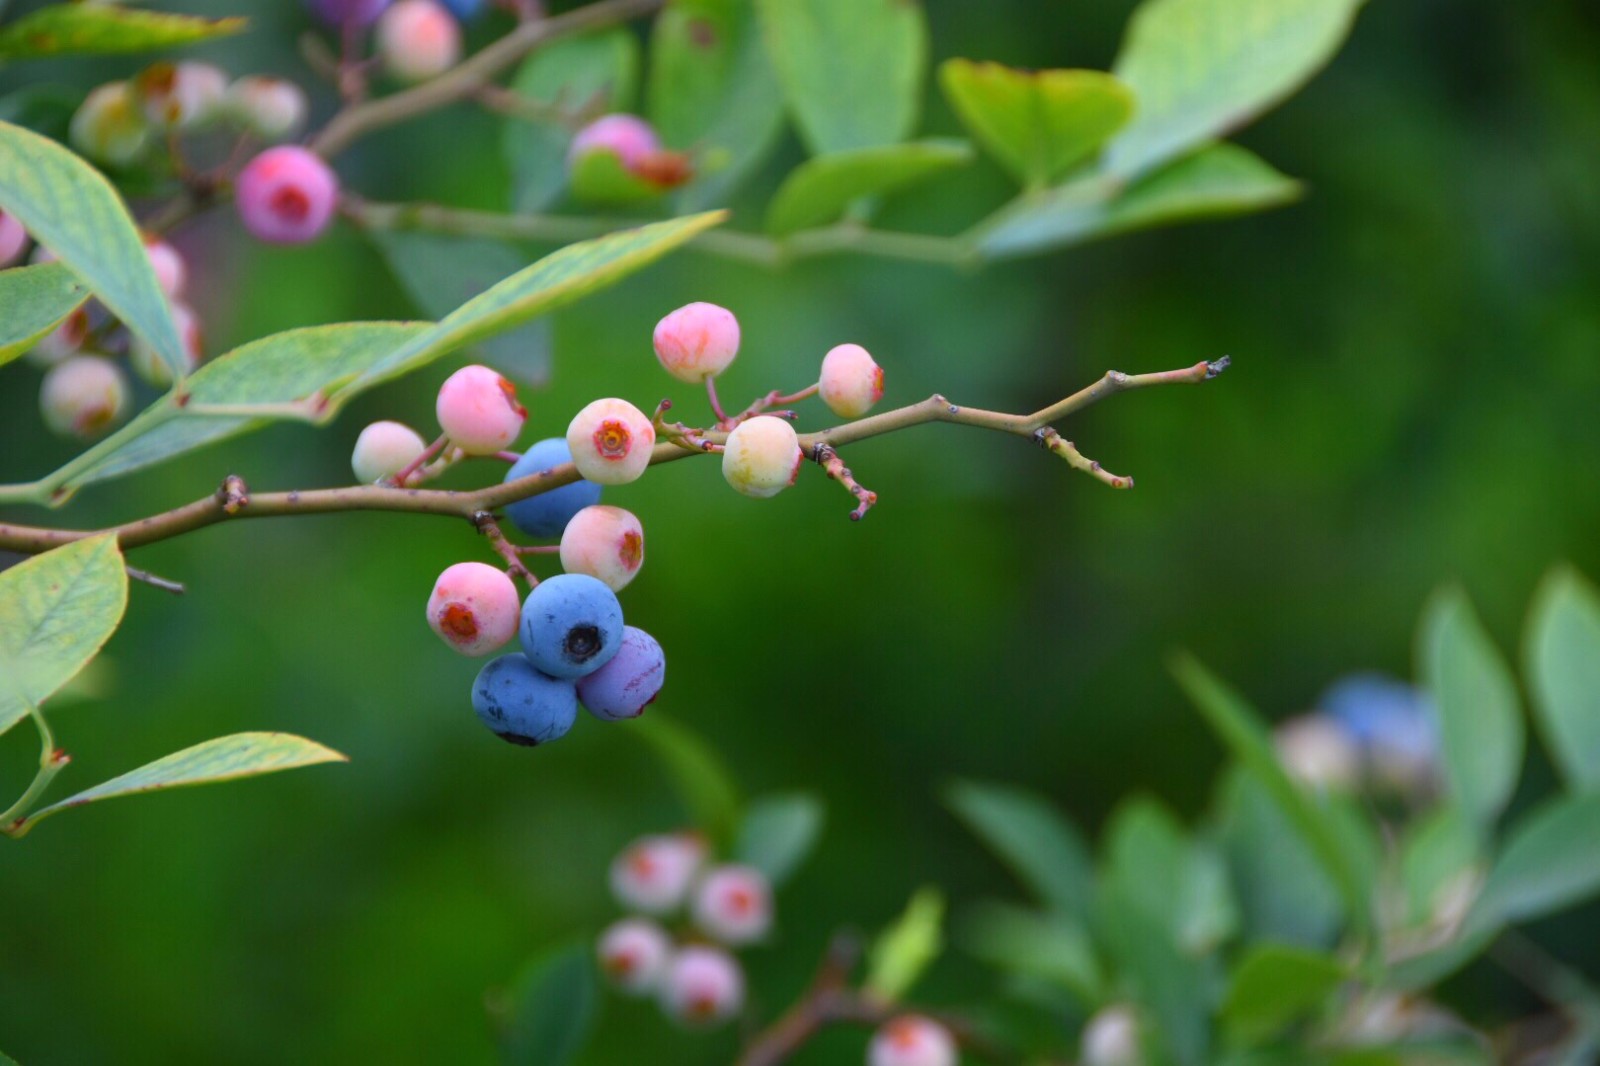 我最爱的蓝莓,第一次看到长在 枝上可爱的模样